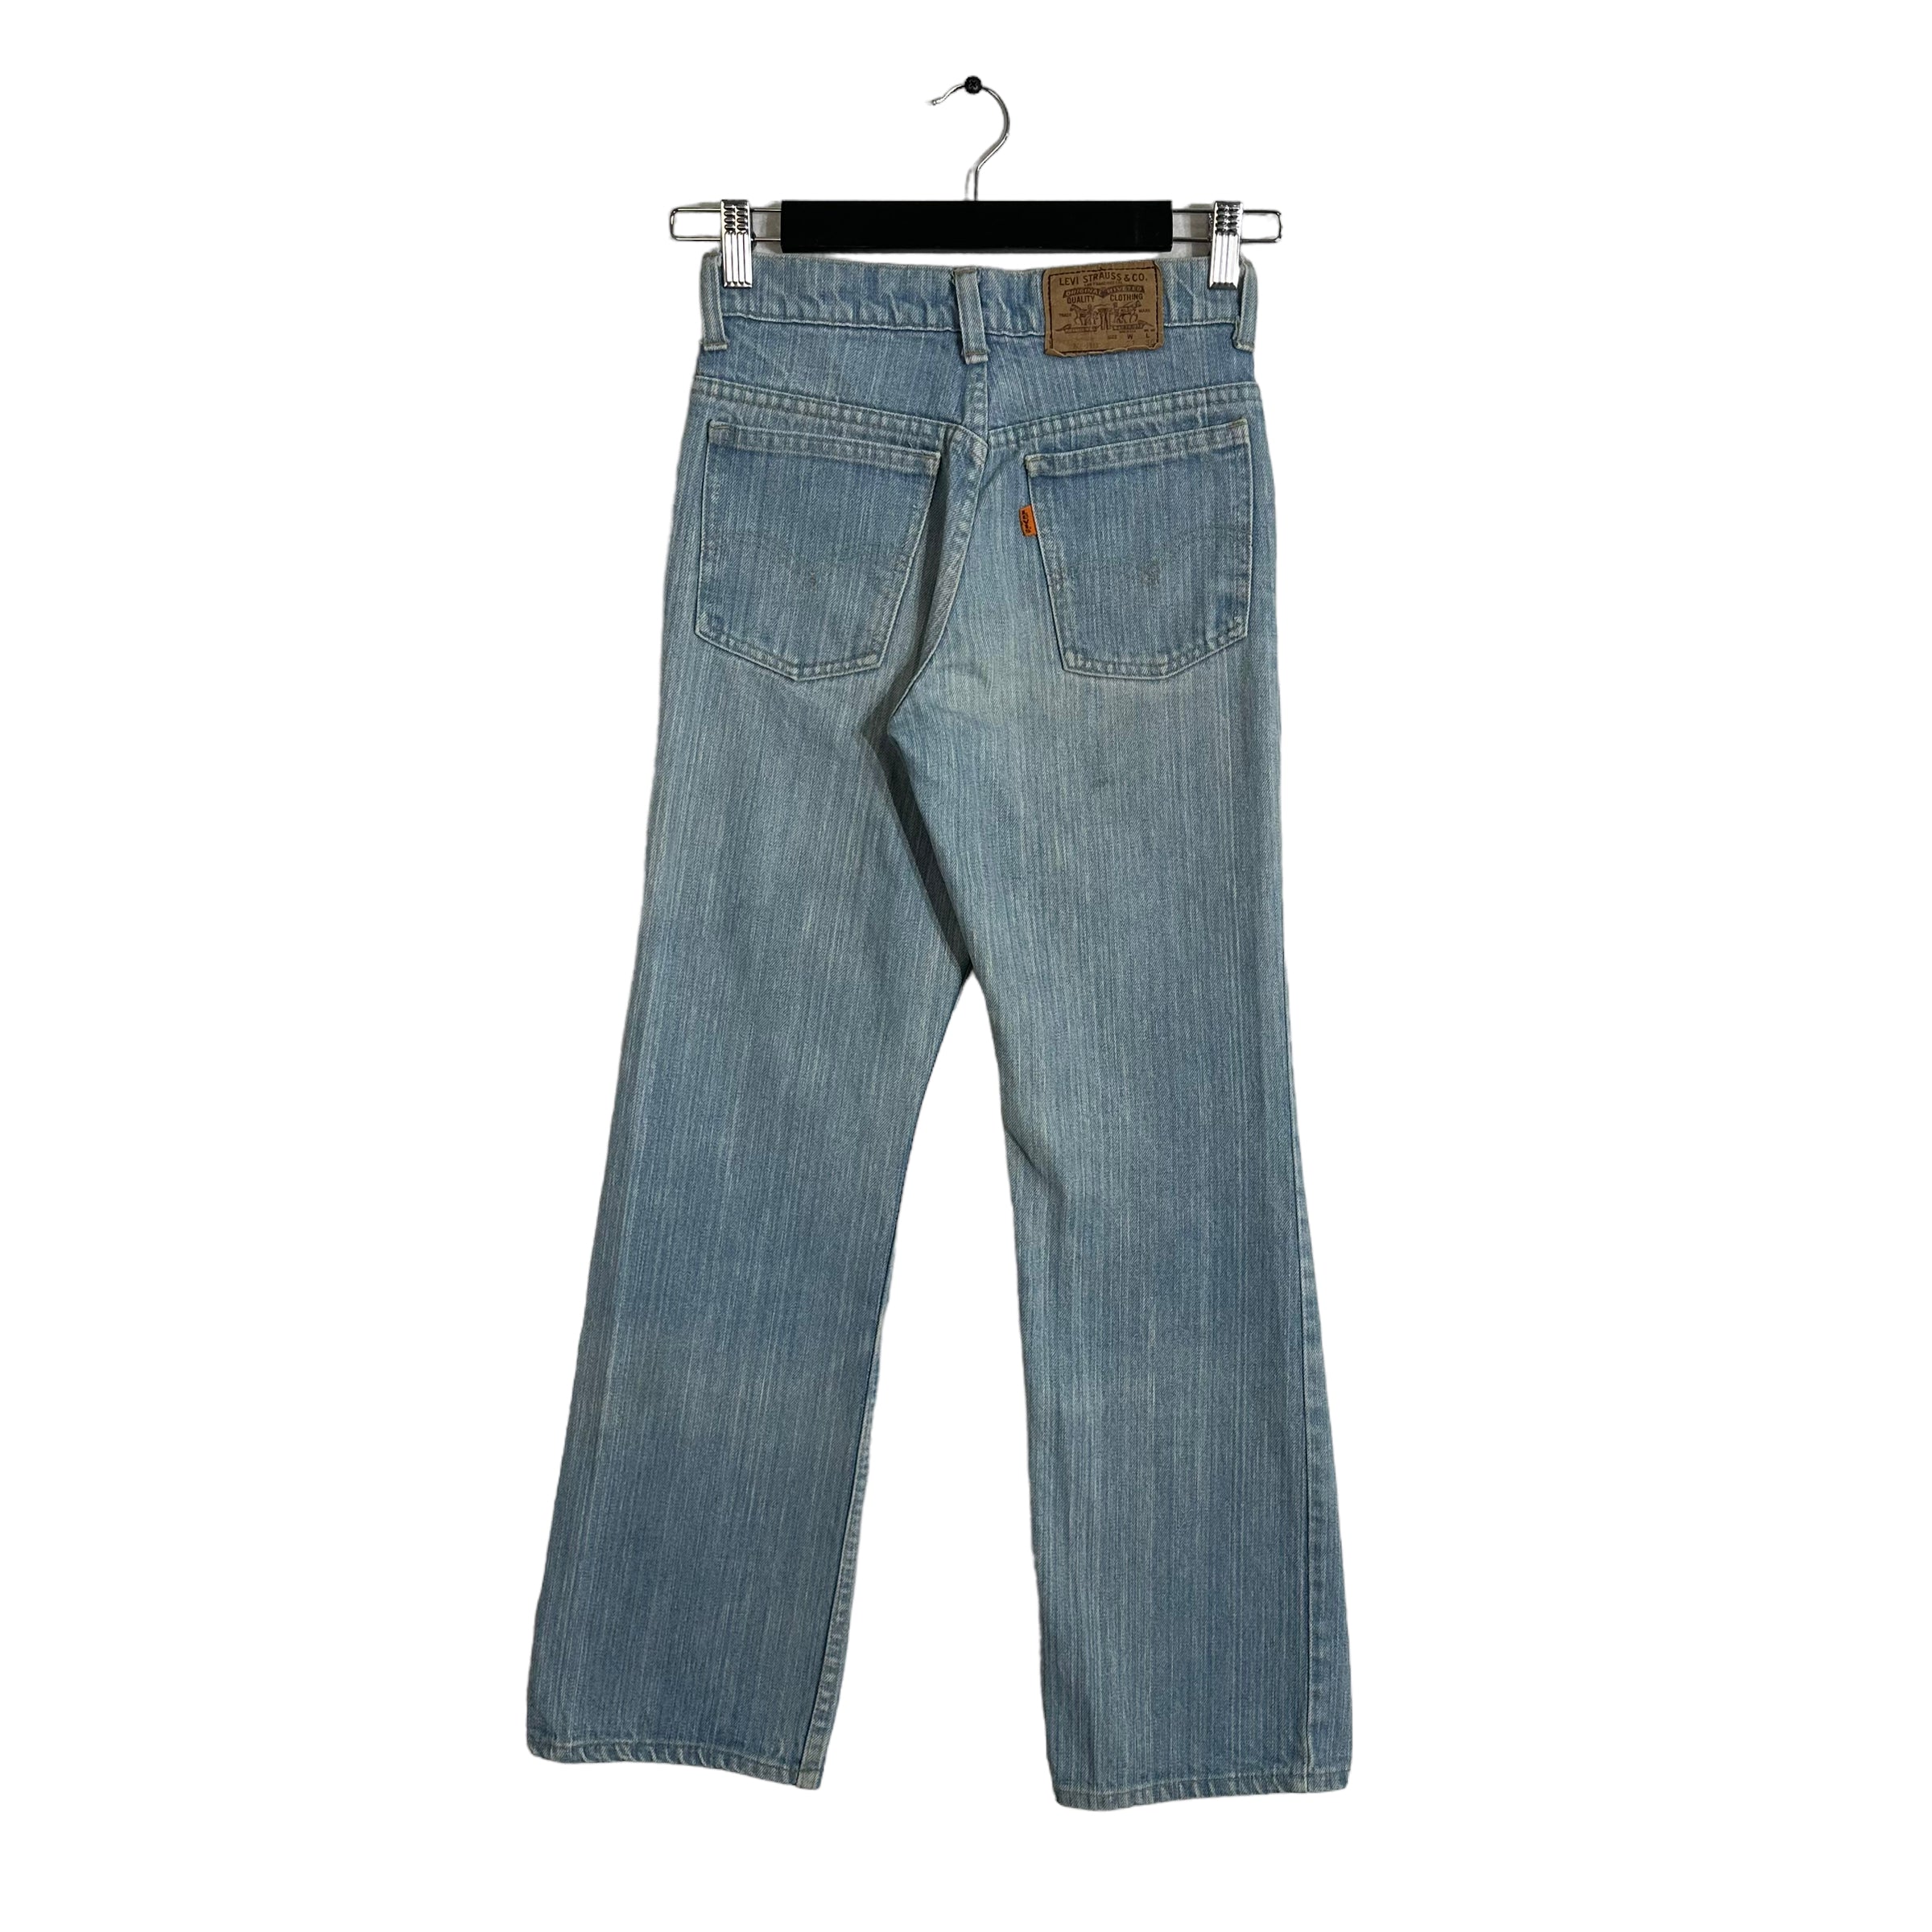 Vintage Levi's Orange Tab Denim Jeans